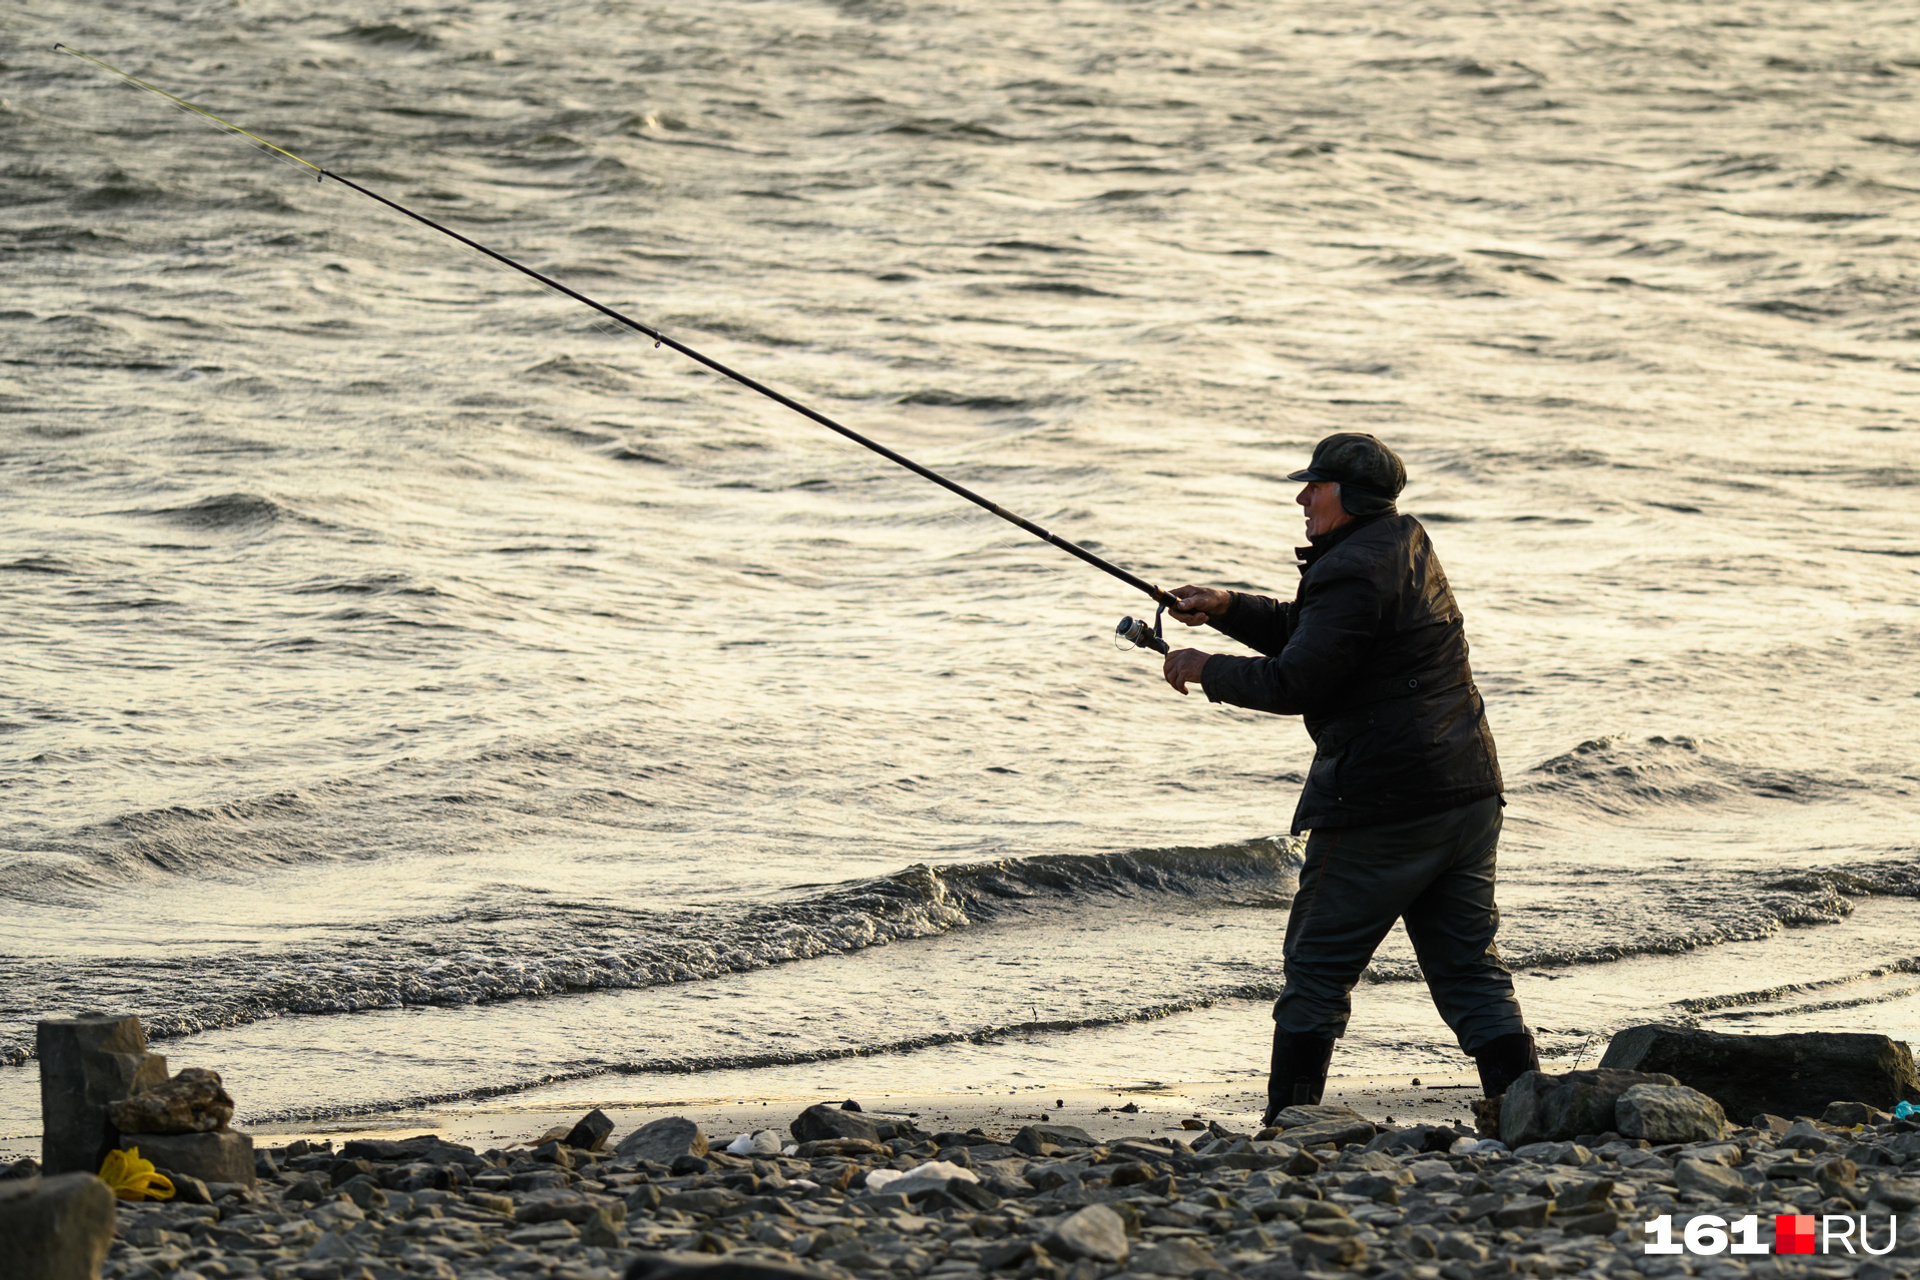 Рыбалка на Дону в контакте - информация и советы для рыбаков